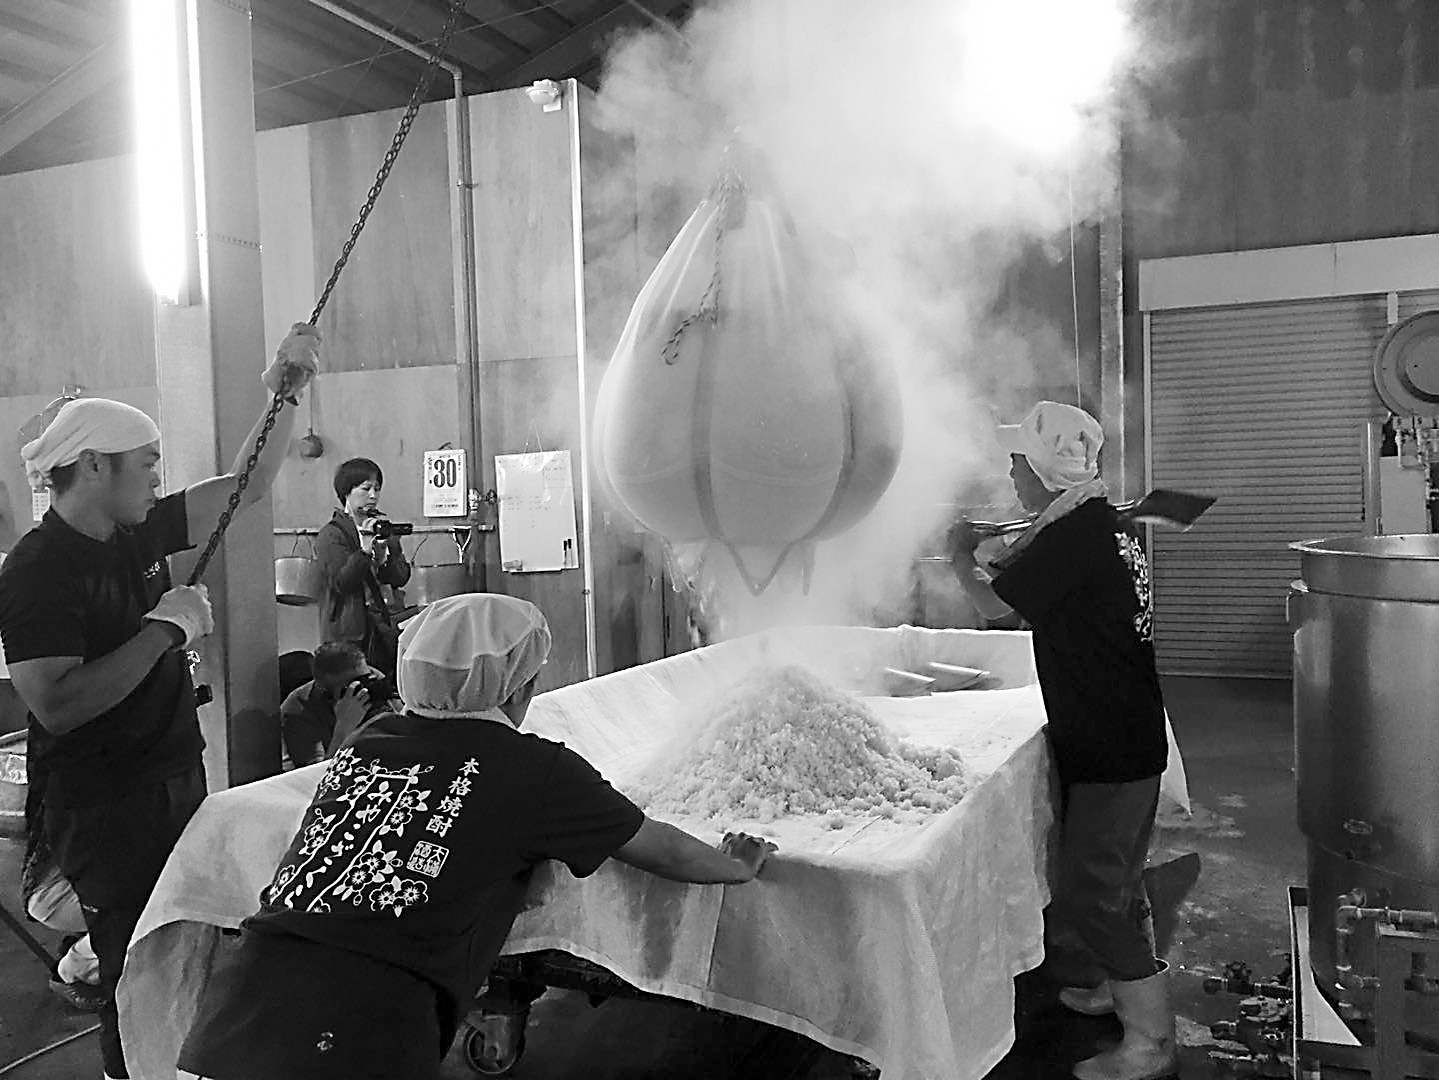 图片说明： 宫崎县手工造酒作坊展示传统酿造技艺。